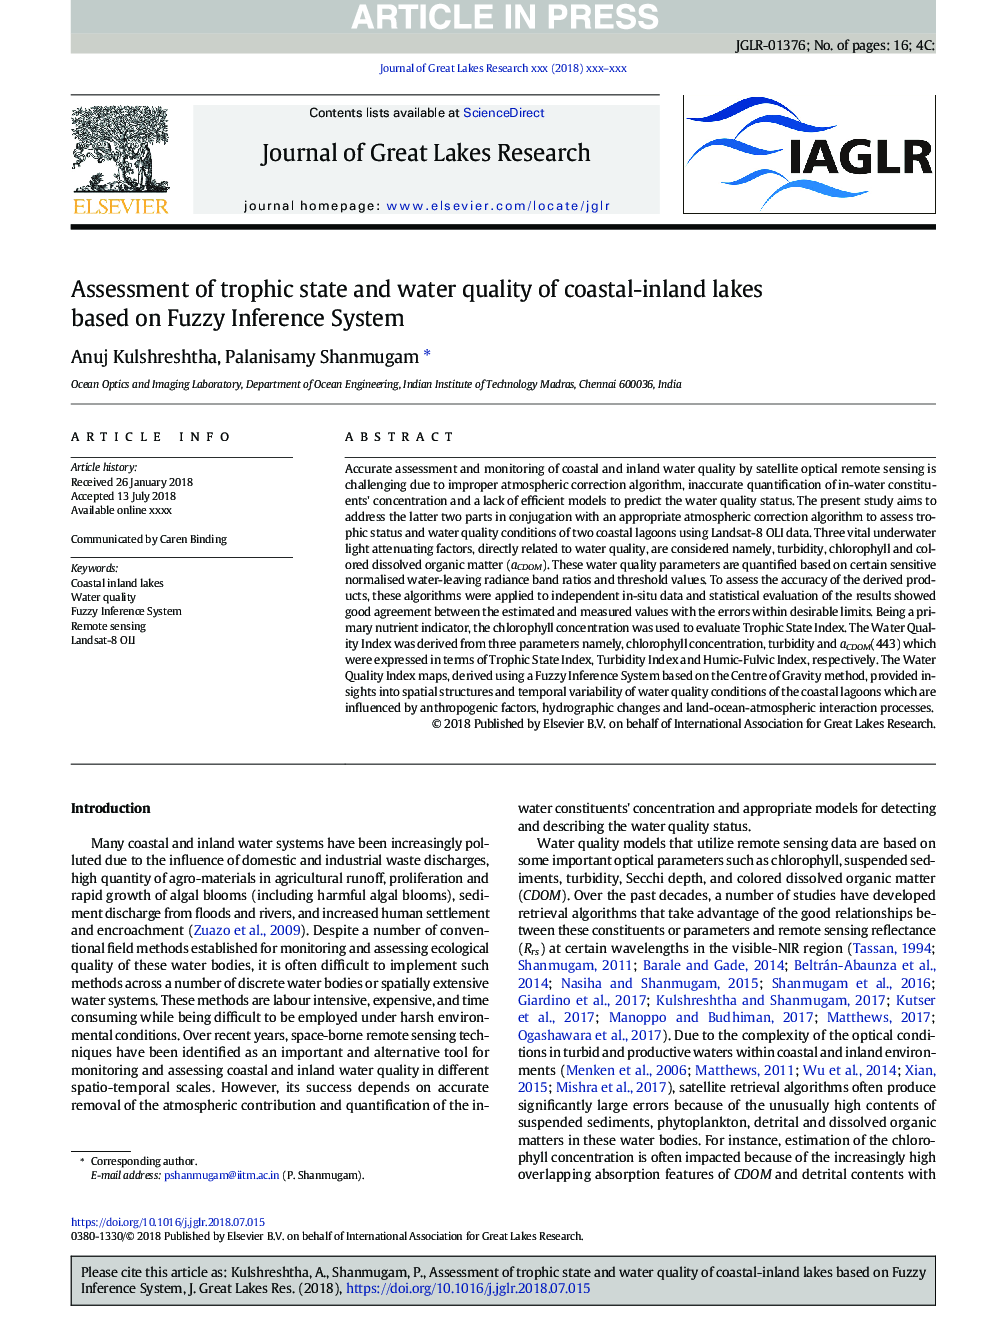 ارزیابی وضعیت طوفان و کیفیت آب دریاچه های ساحلی بر اساس سیستم استنتاج فازی